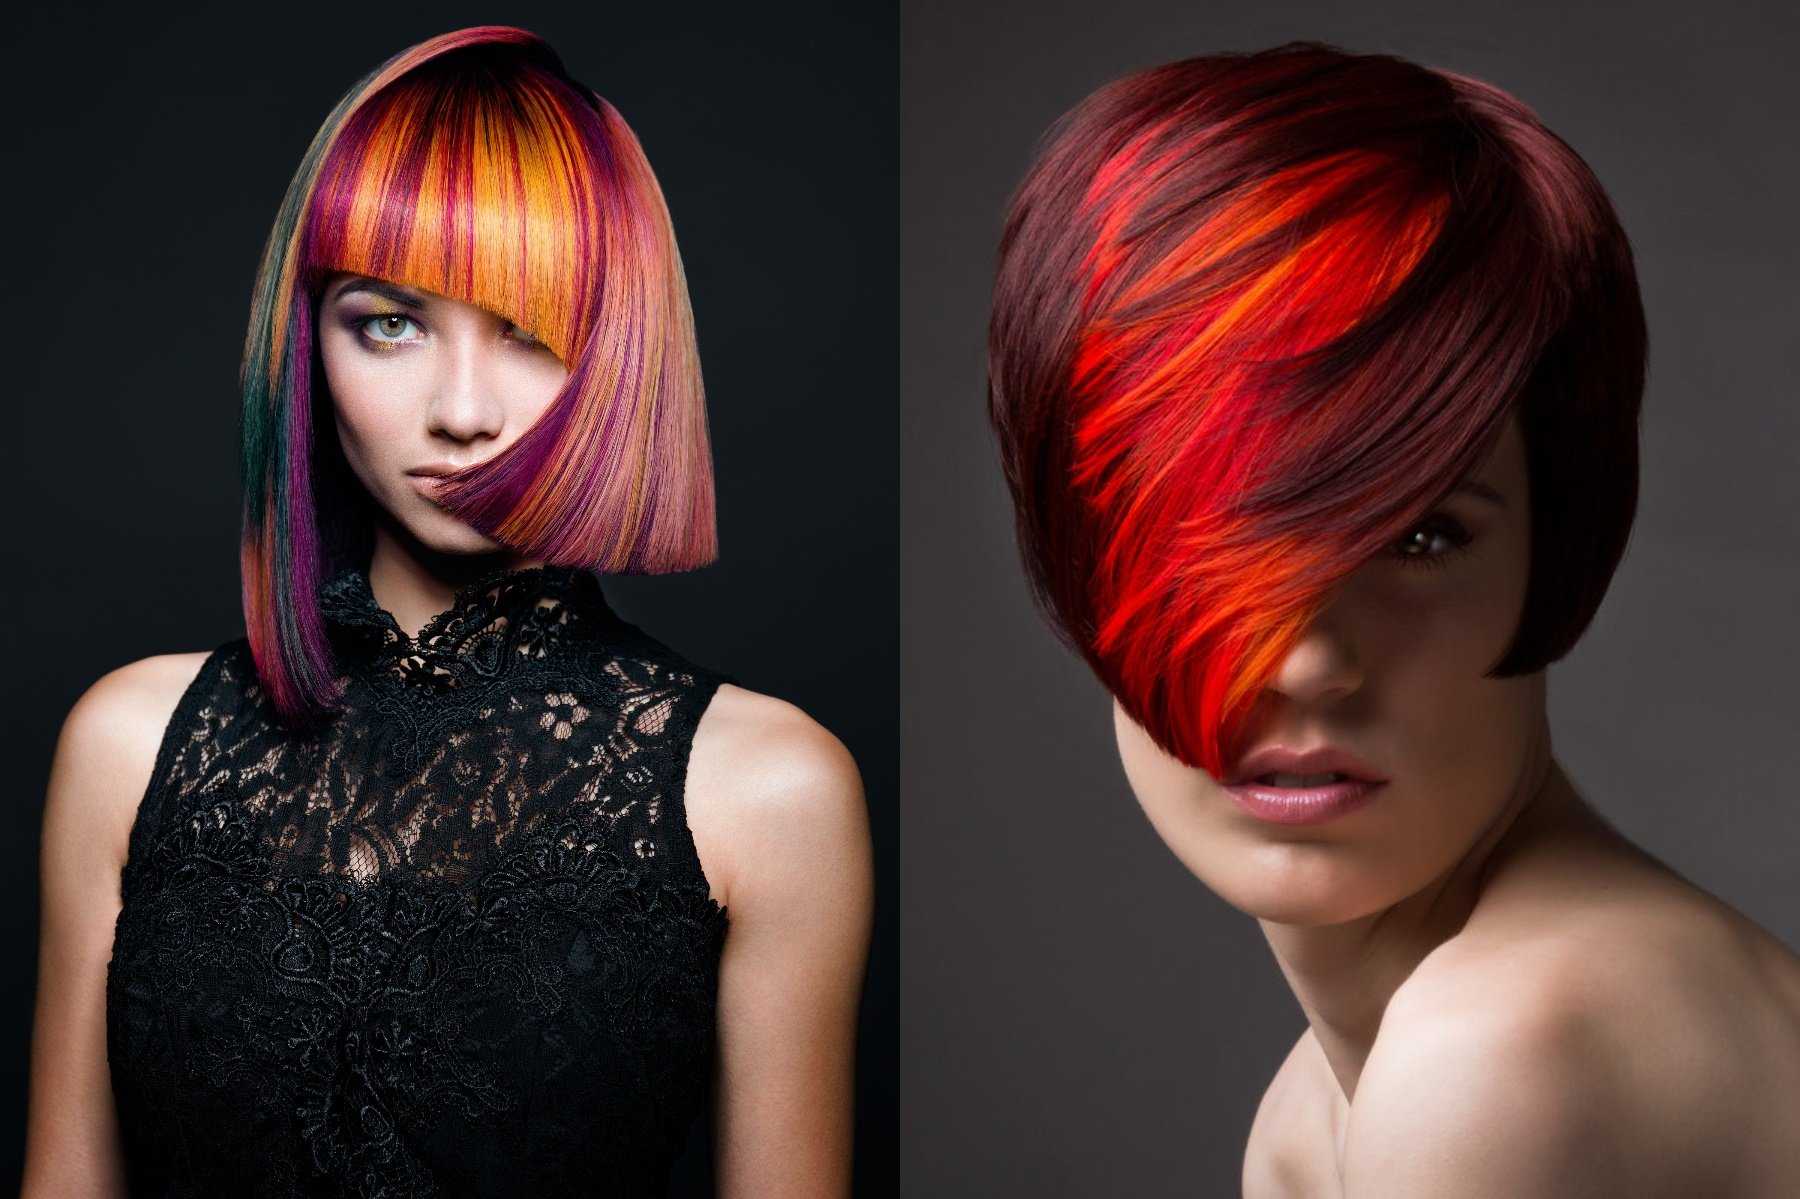 Модное окрашивание волос 2020. фото новинки и тренды окрашивания на разную длину волос | volosomanjaki.com